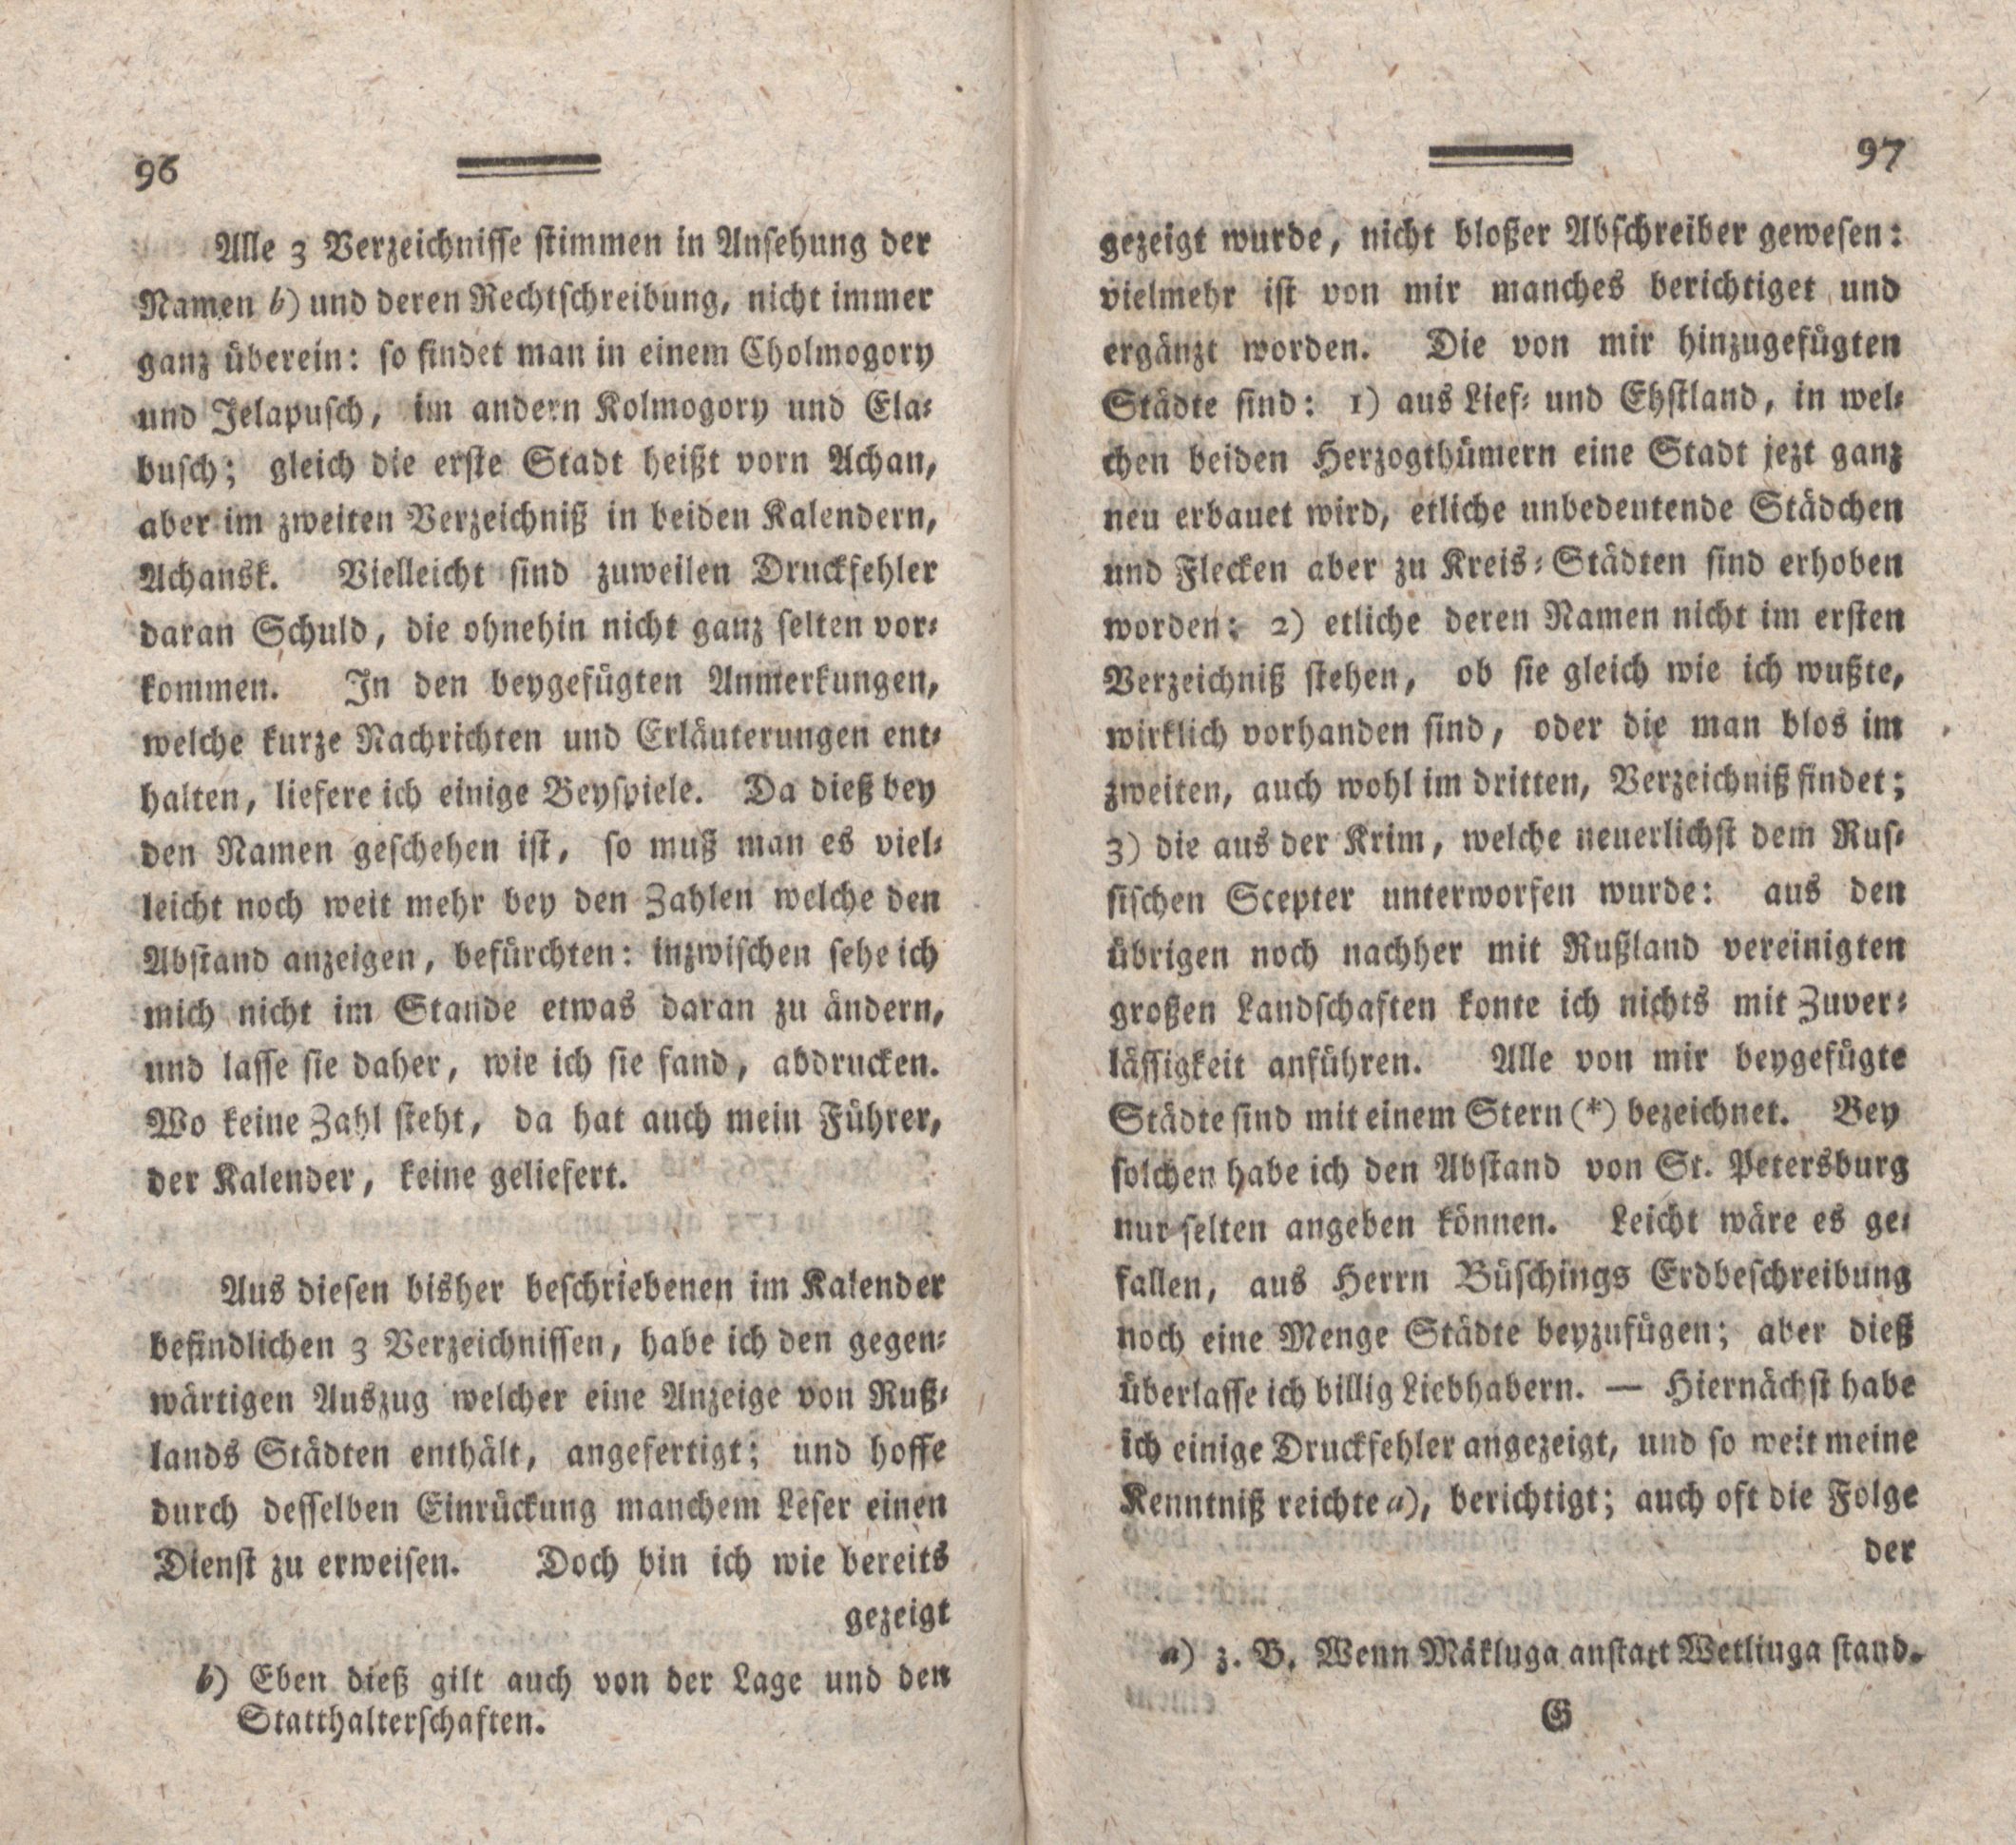 Nordische Miscellaneen [08] (1784) | 49. (96-97) Main body of text